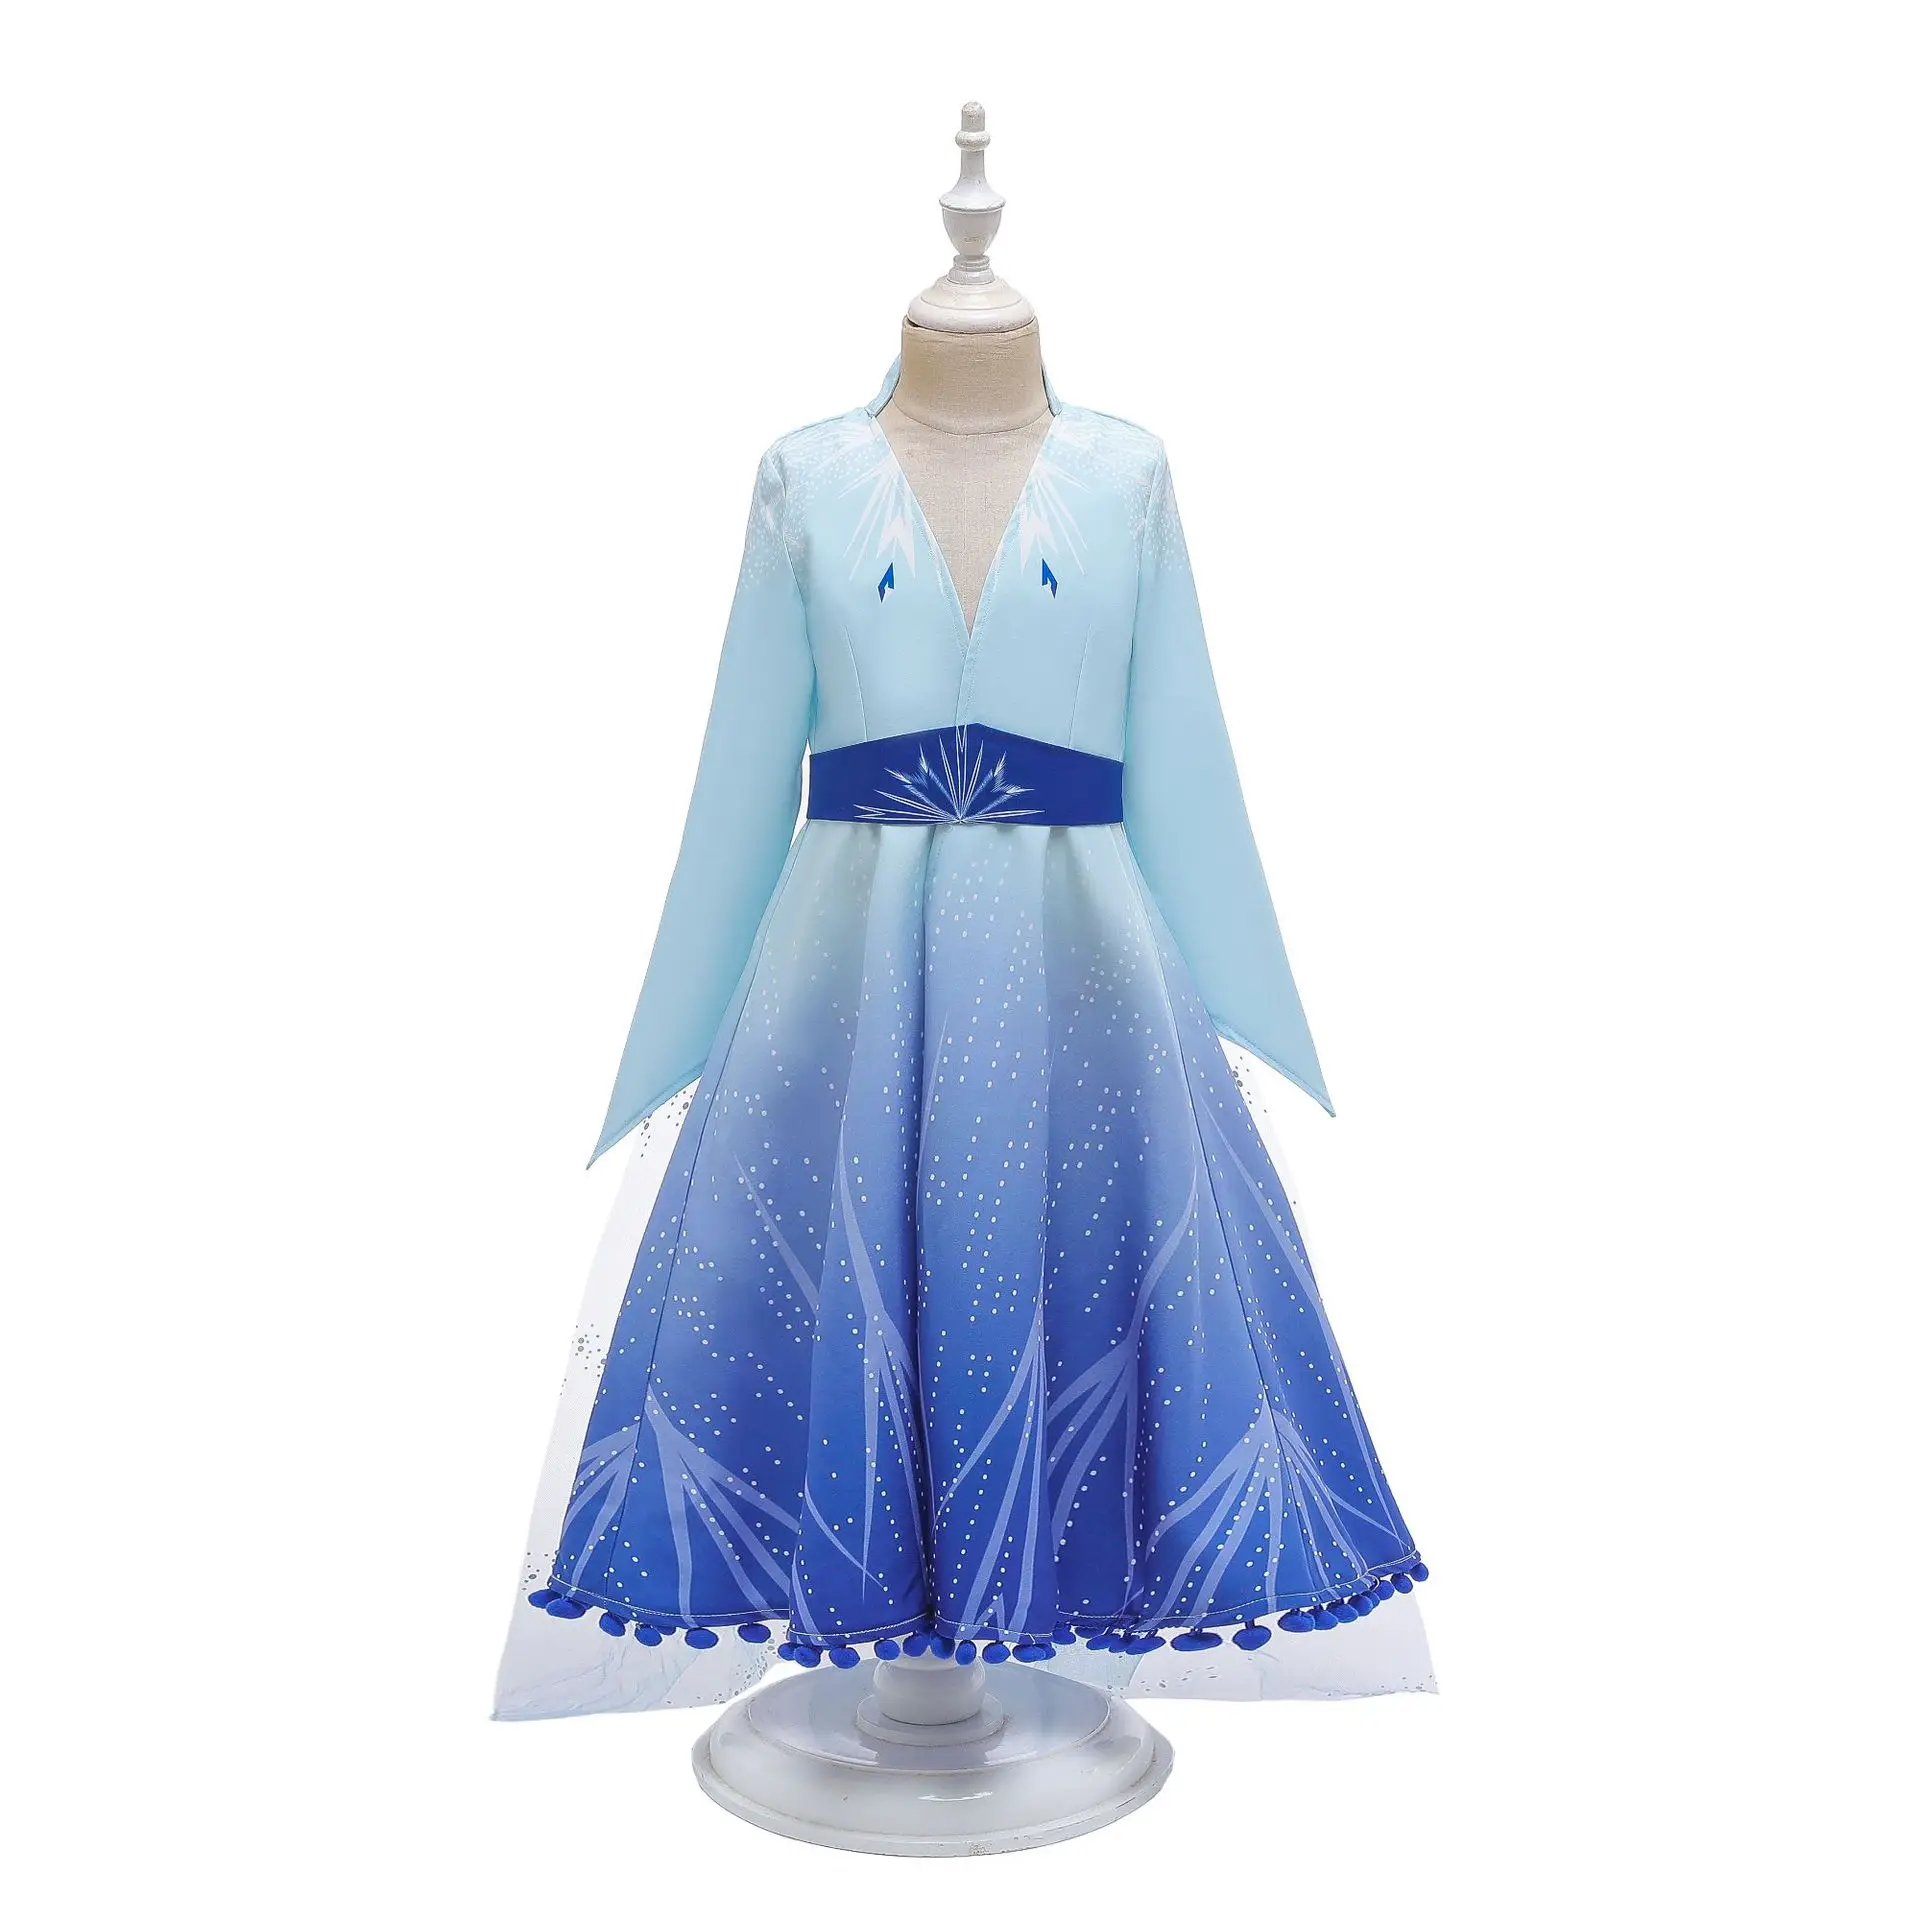 Платье принцессы Анны и Эльзы; платье Снежной Королевы для костюмированной вечеринки, дня рождения, свадьбы, Рождества; платья для маленьких девочек небесно-голубого цвета